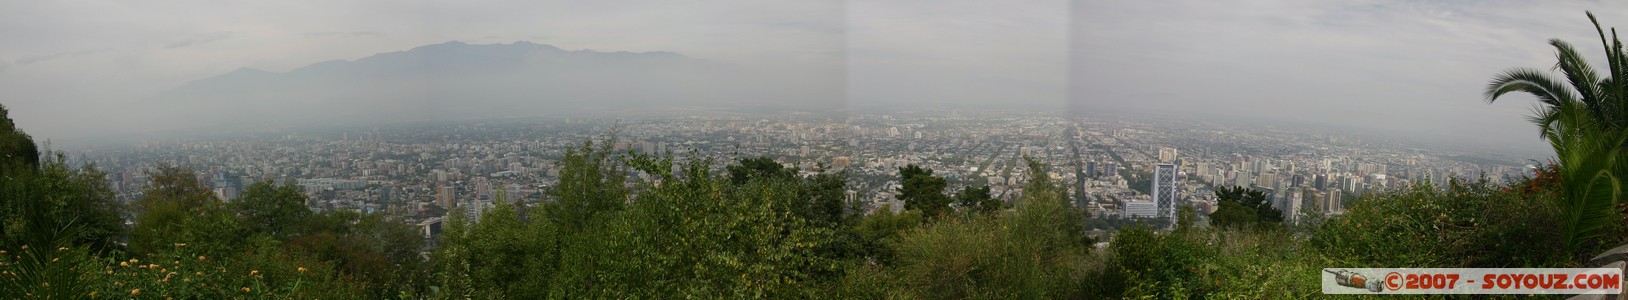 Vue sur Santiago depuis le Parque Metropolitano - vue panoramique
